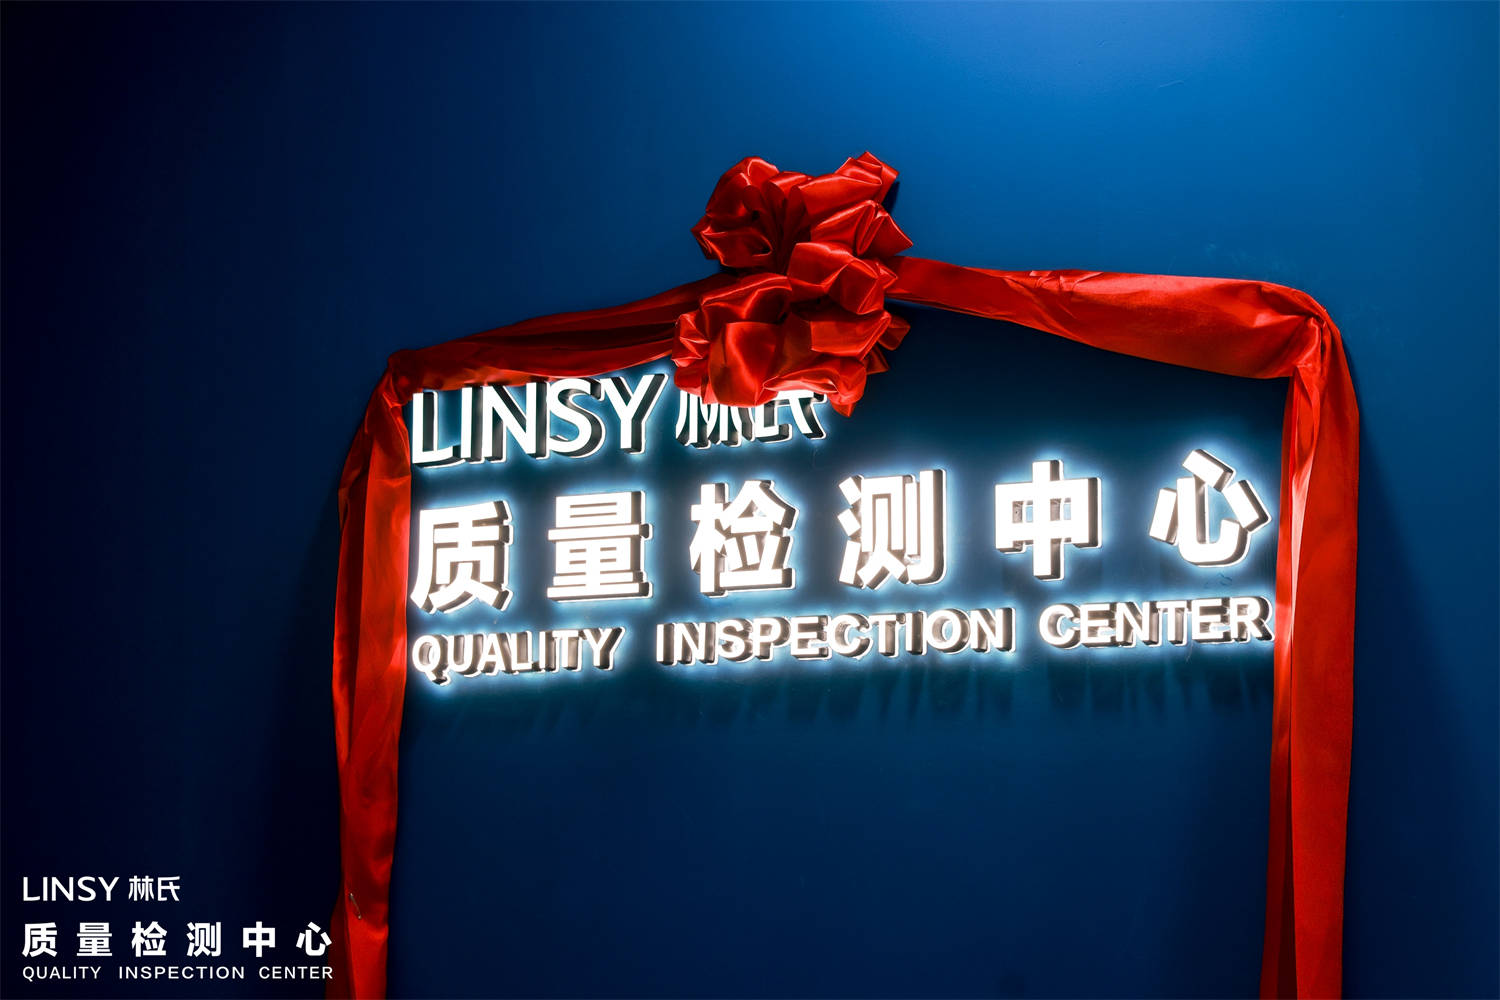 ברכות על פתיחת מרכז בדיקת האיכות של LINSY
        